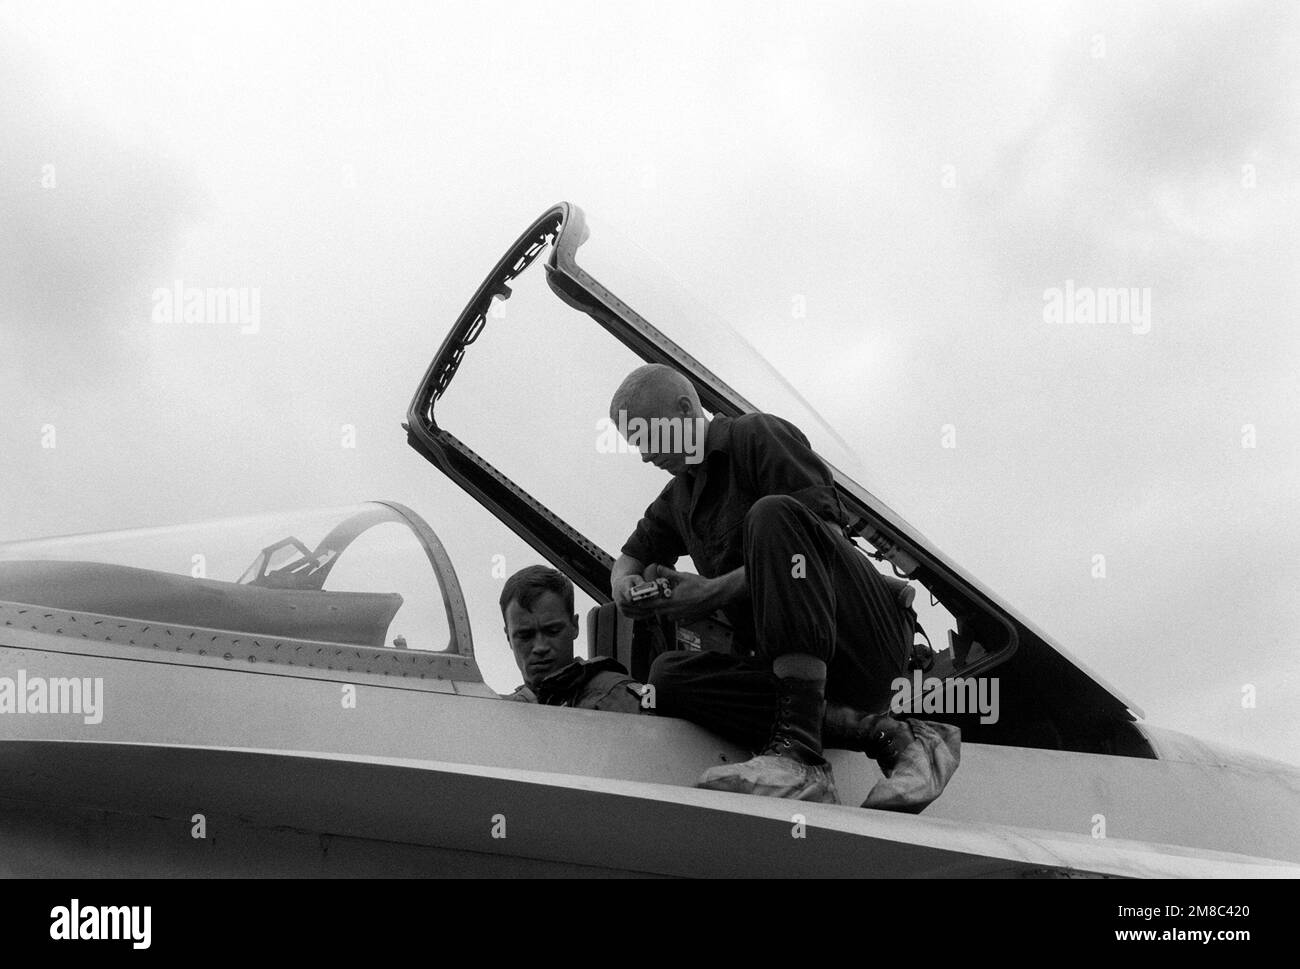 PFC Gary Henson aiuta il CPT Benjamin Cunningham ad allacciarsi nell'abitacolo di un F/A-18A Hornet durante l'esercizio combinato thailandese/statunitense Thalay Thai '89. Entrambi i Marines sono membri del Marine Fighter Attack Squadron 115 (VMFA-115). Paese: Thailandia (THA) Foto Stock